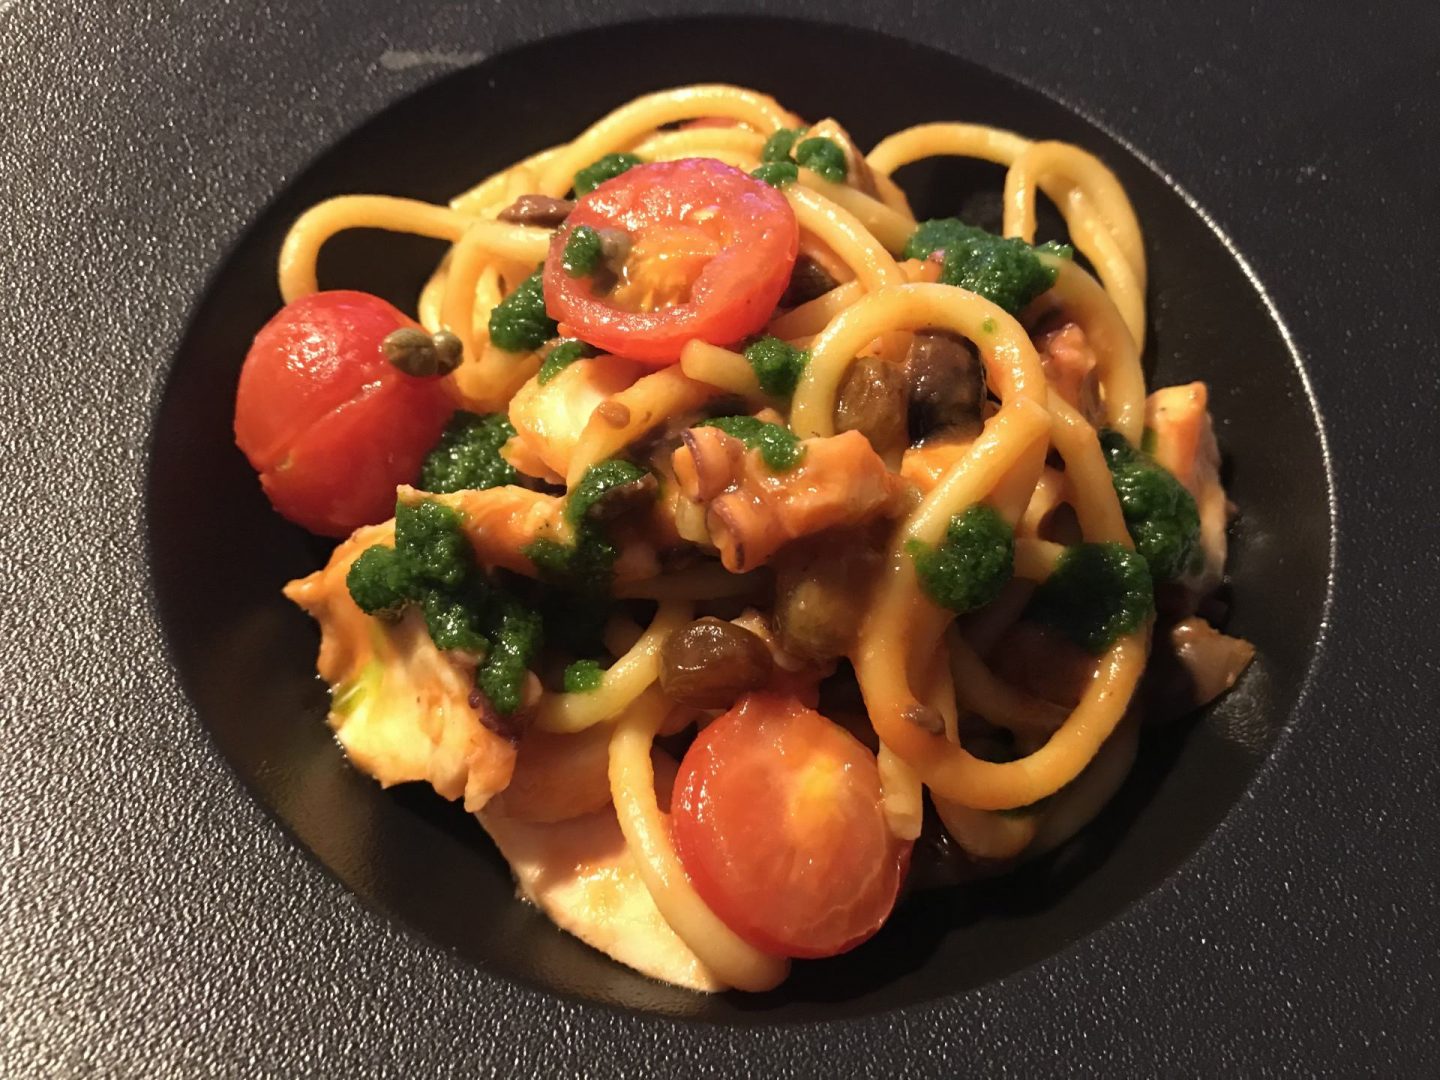 Erfahrung Bewertung Kritik Pastabar Caruso Köln Take away Spaghettoni Oktopus Tomate Foodblog Sternestulle